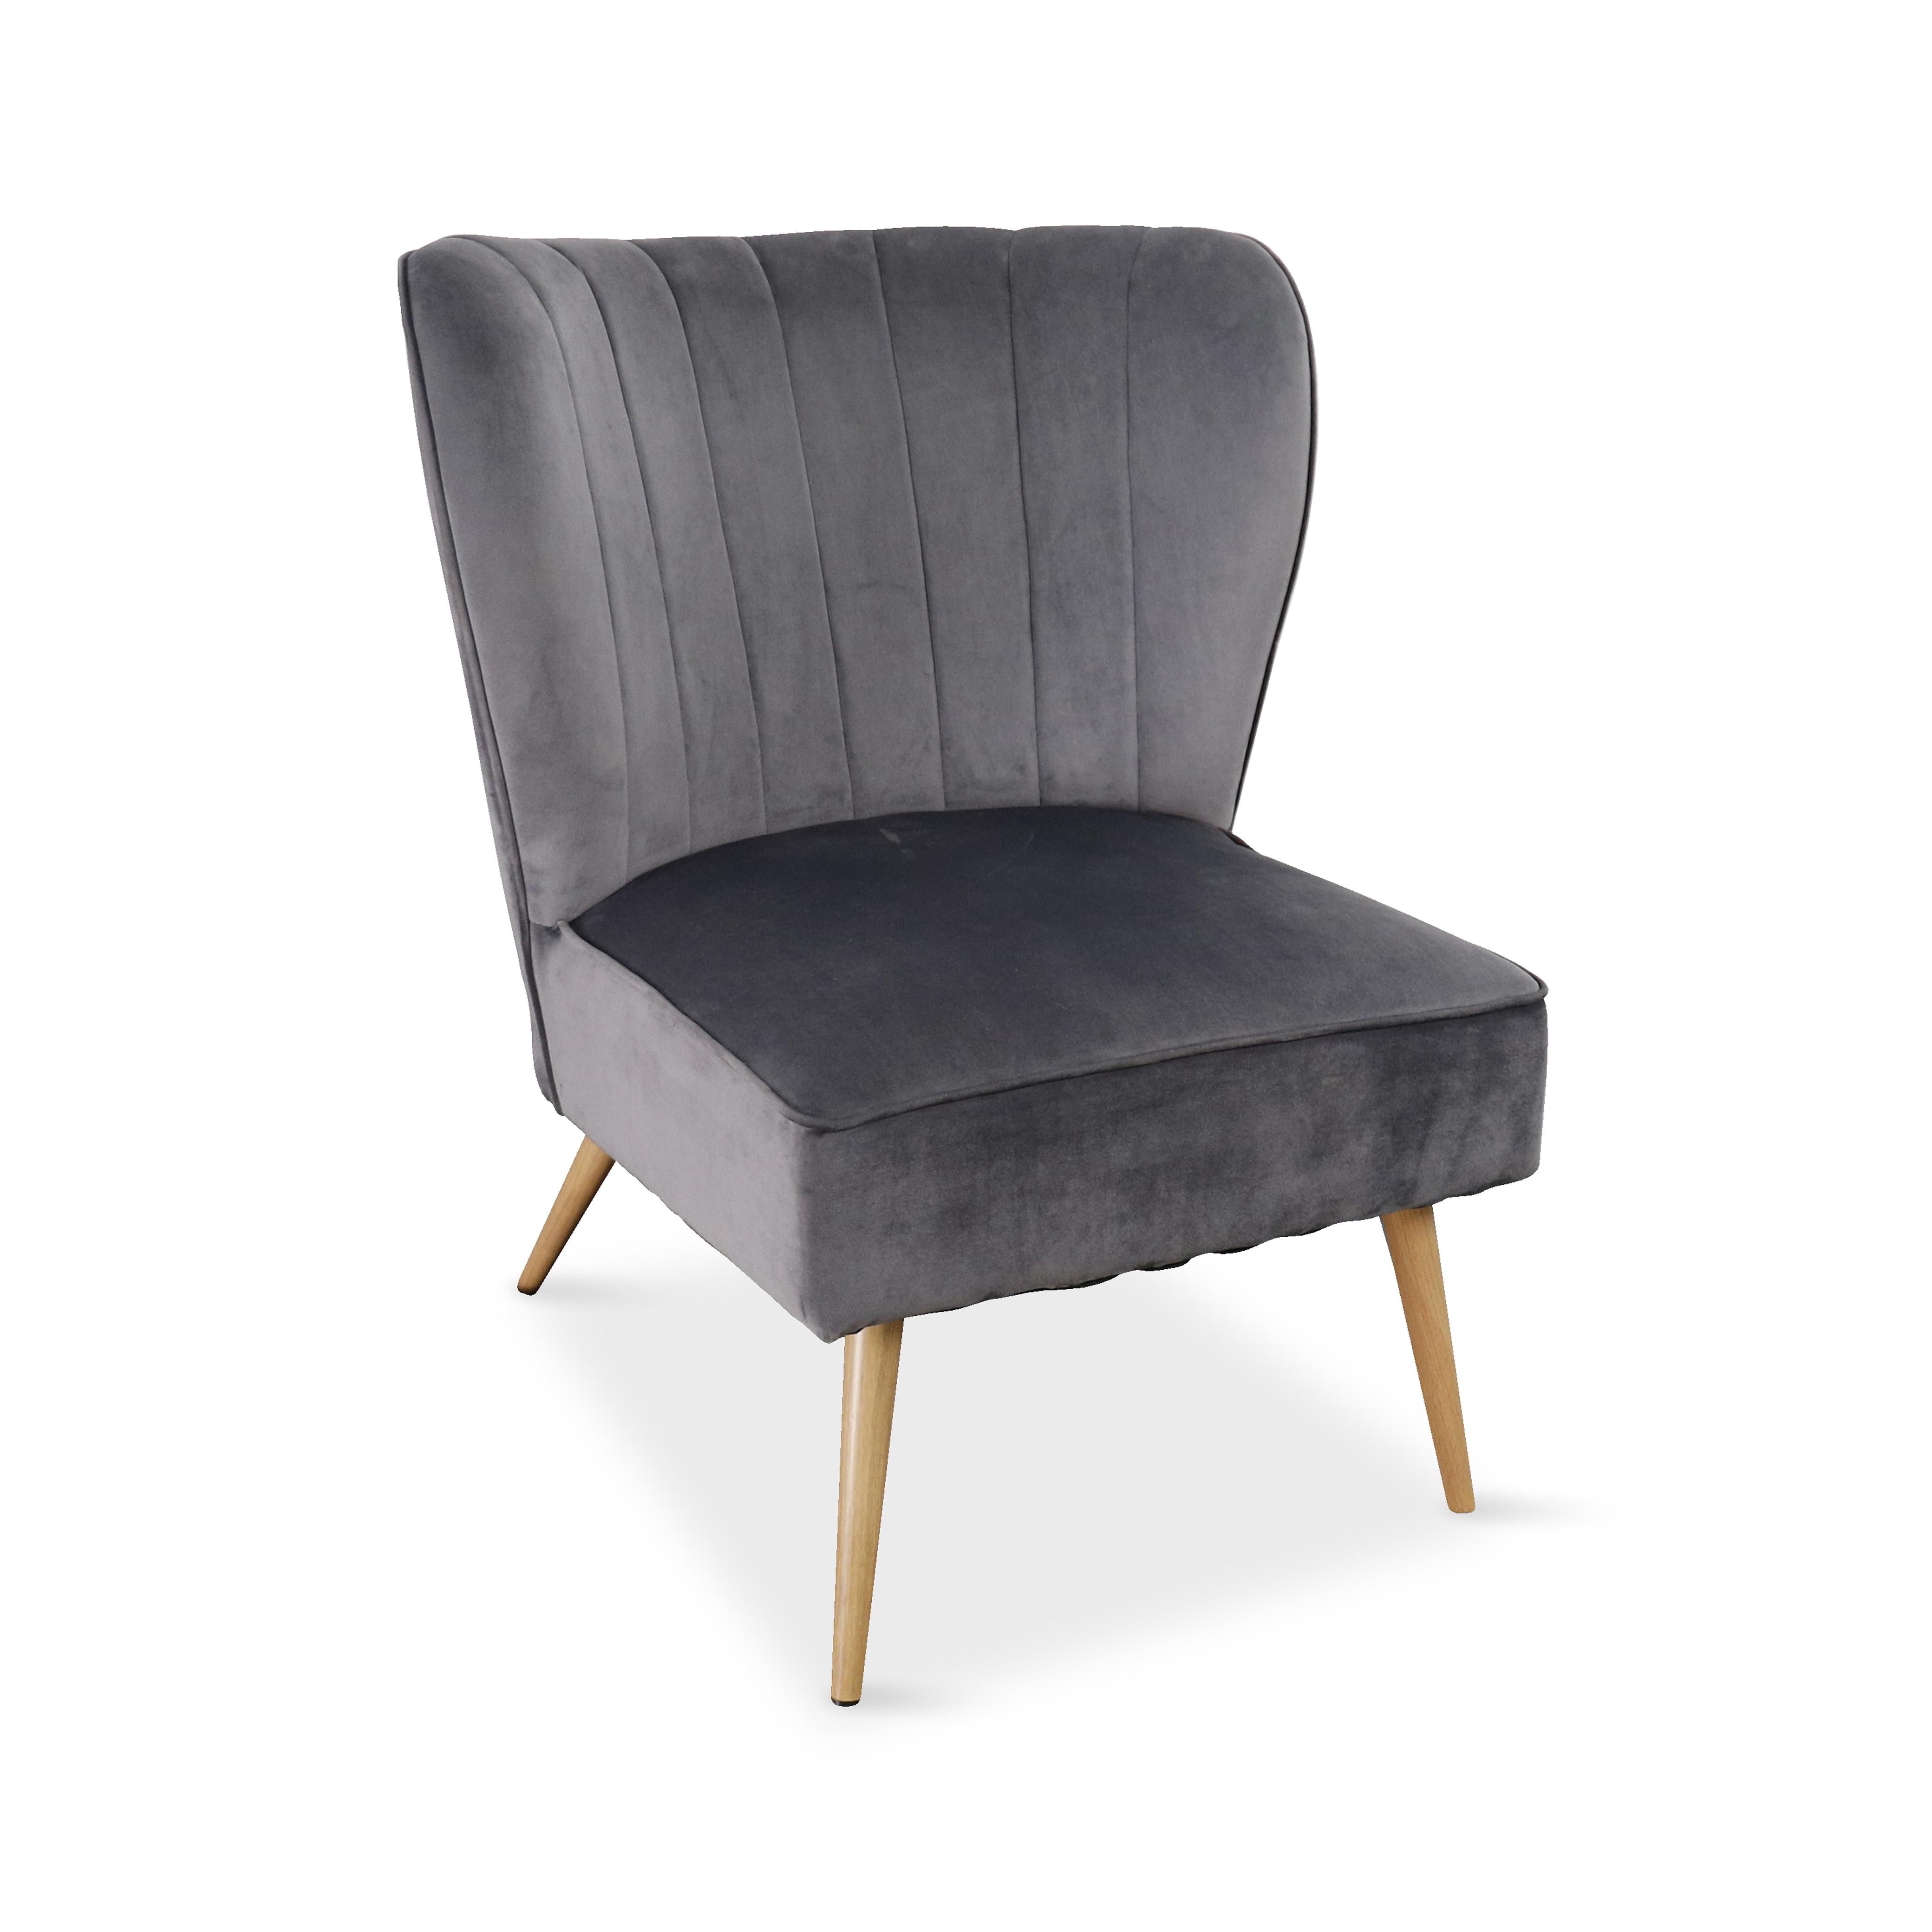 Modern Living Room Leisure Chair Covered by Velvet